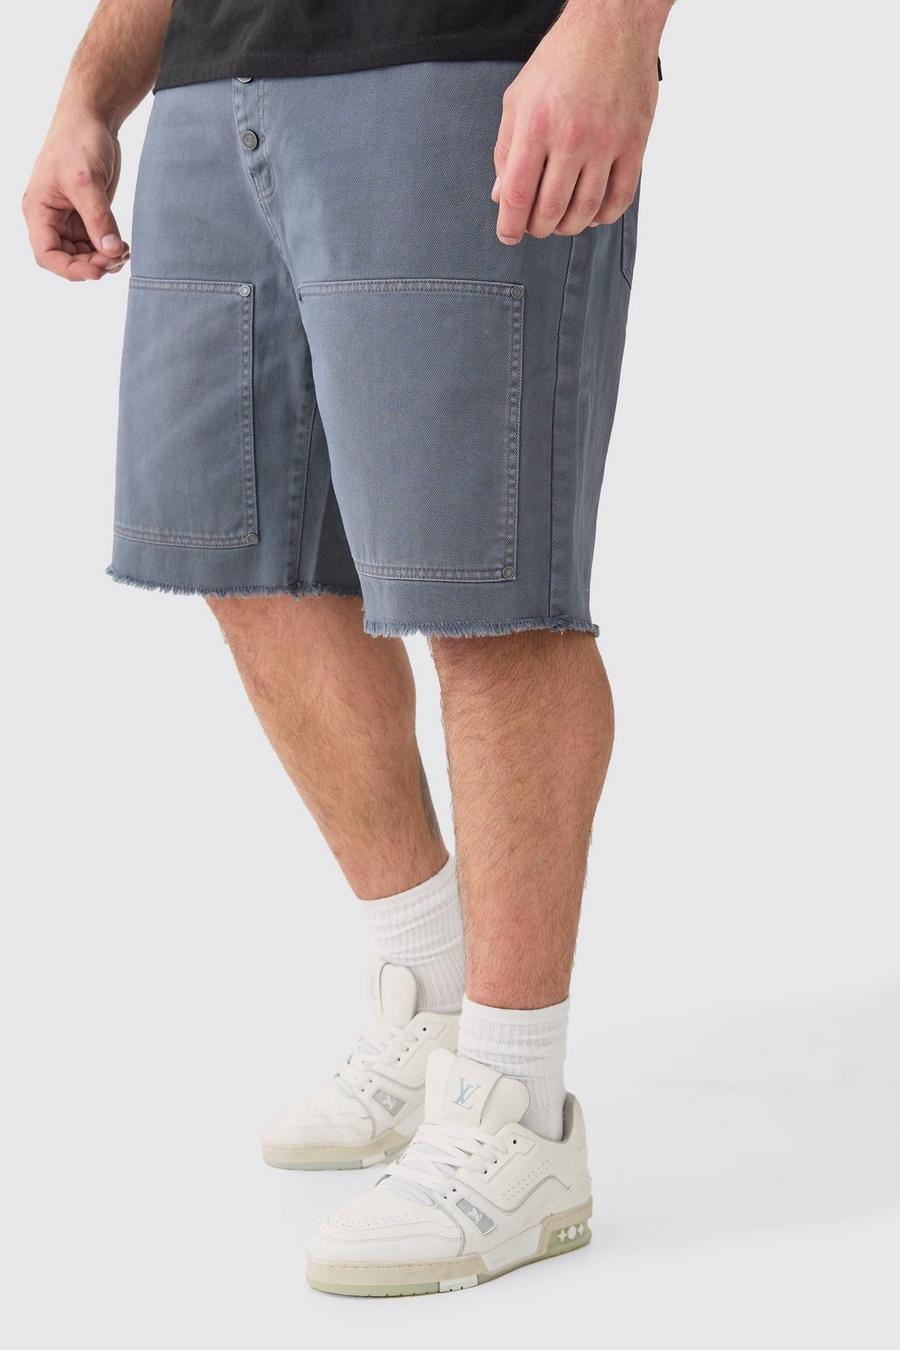 Pantaloncini rilassati Plus Size stile Carpenter in twill slavato con vita fissa, Charcoal